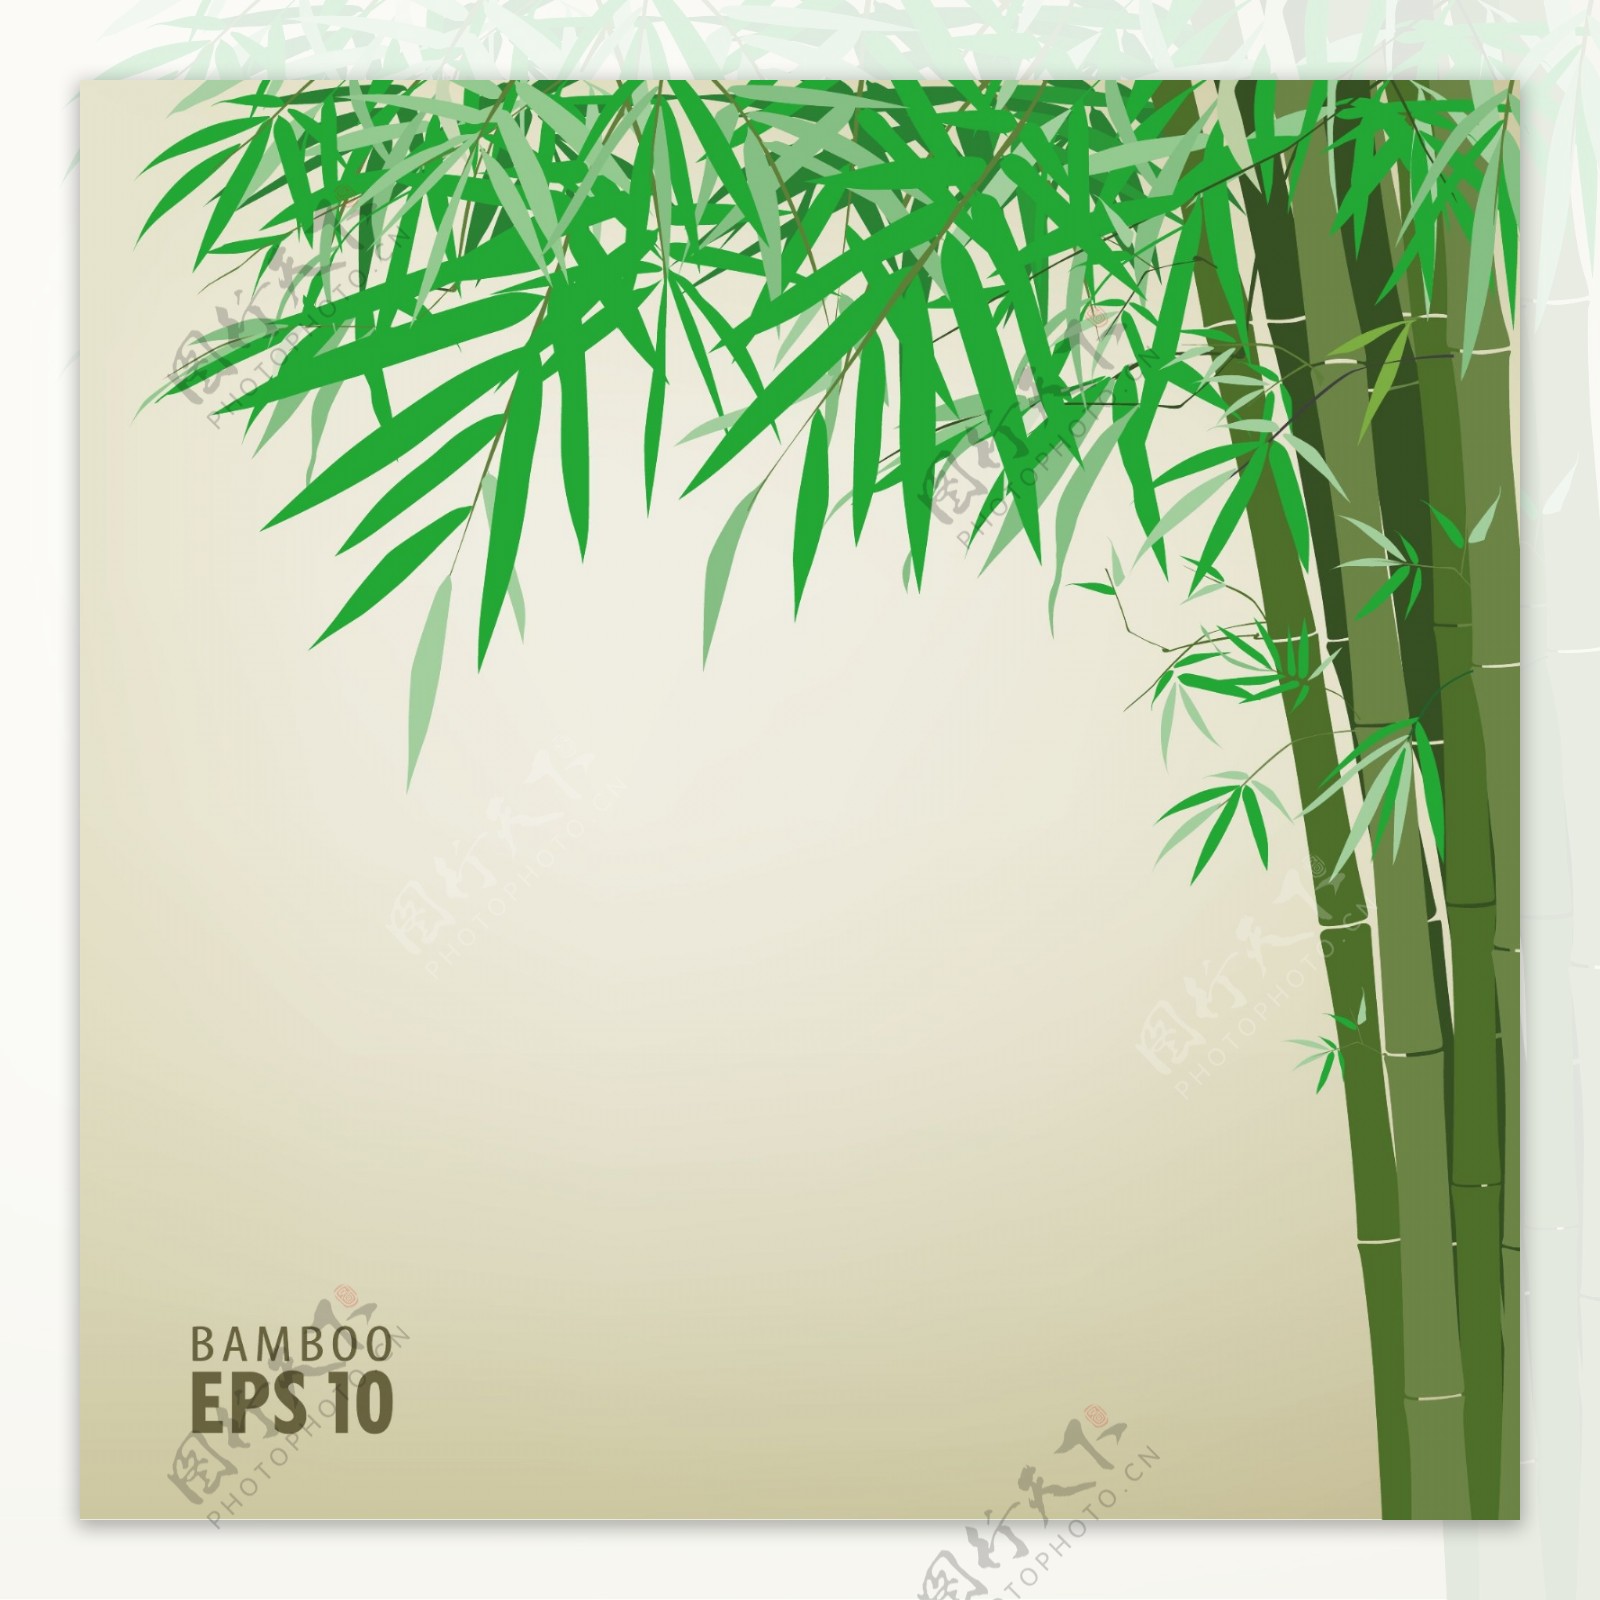 绿竹背景文本模板矢量素材2